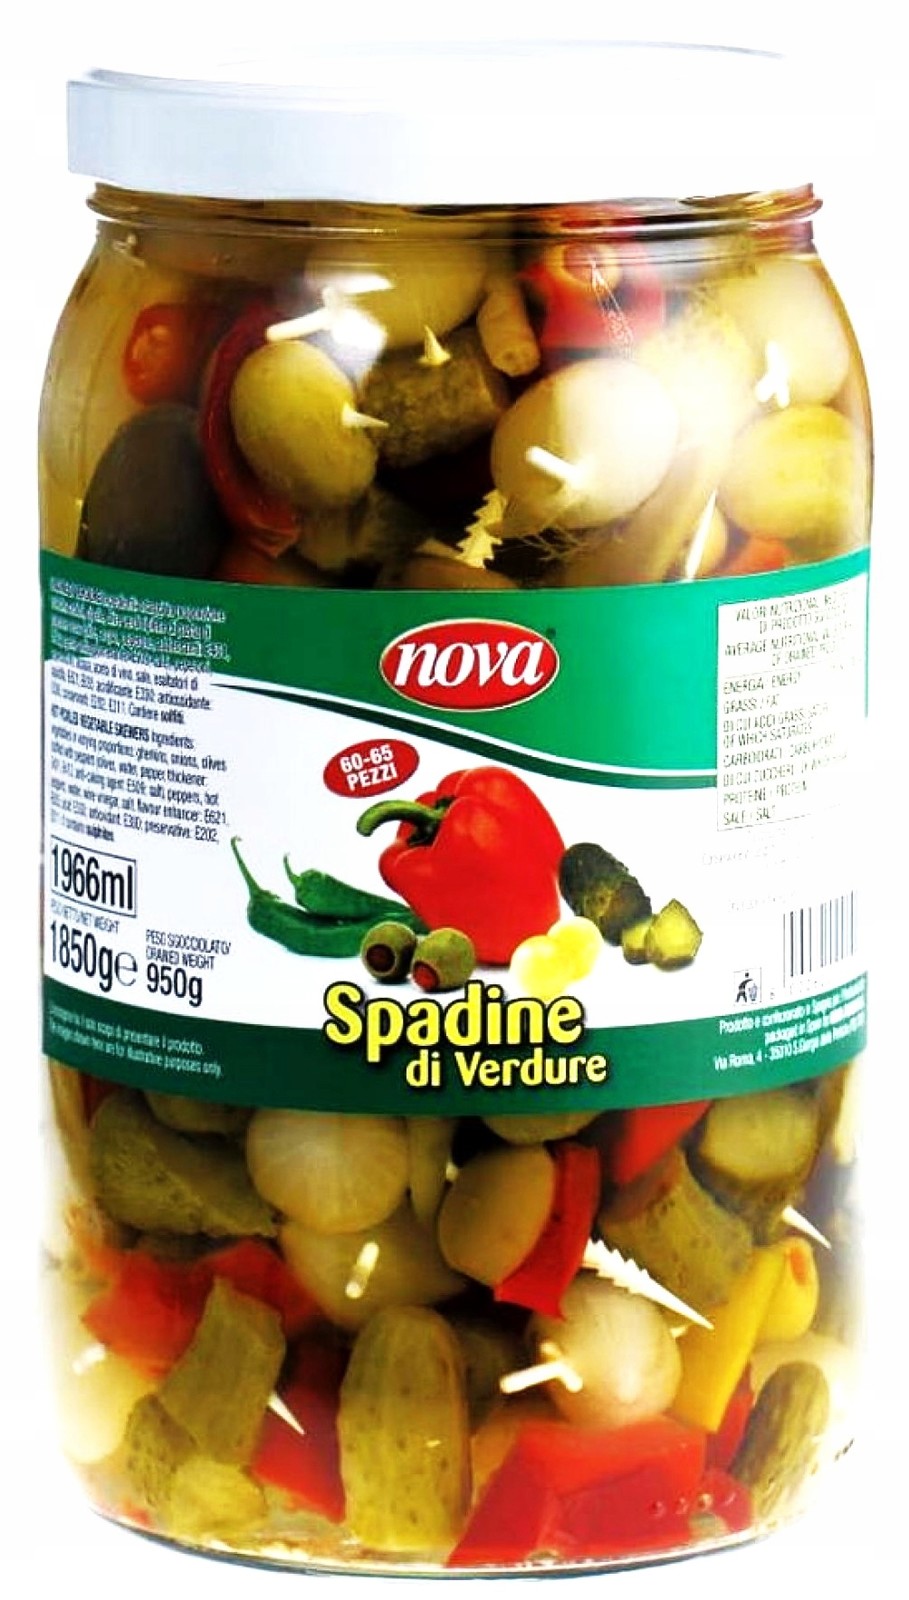 Zeleninové zátky „spadine di verdure“ Nova (60-65 kusů) 950g Itálie